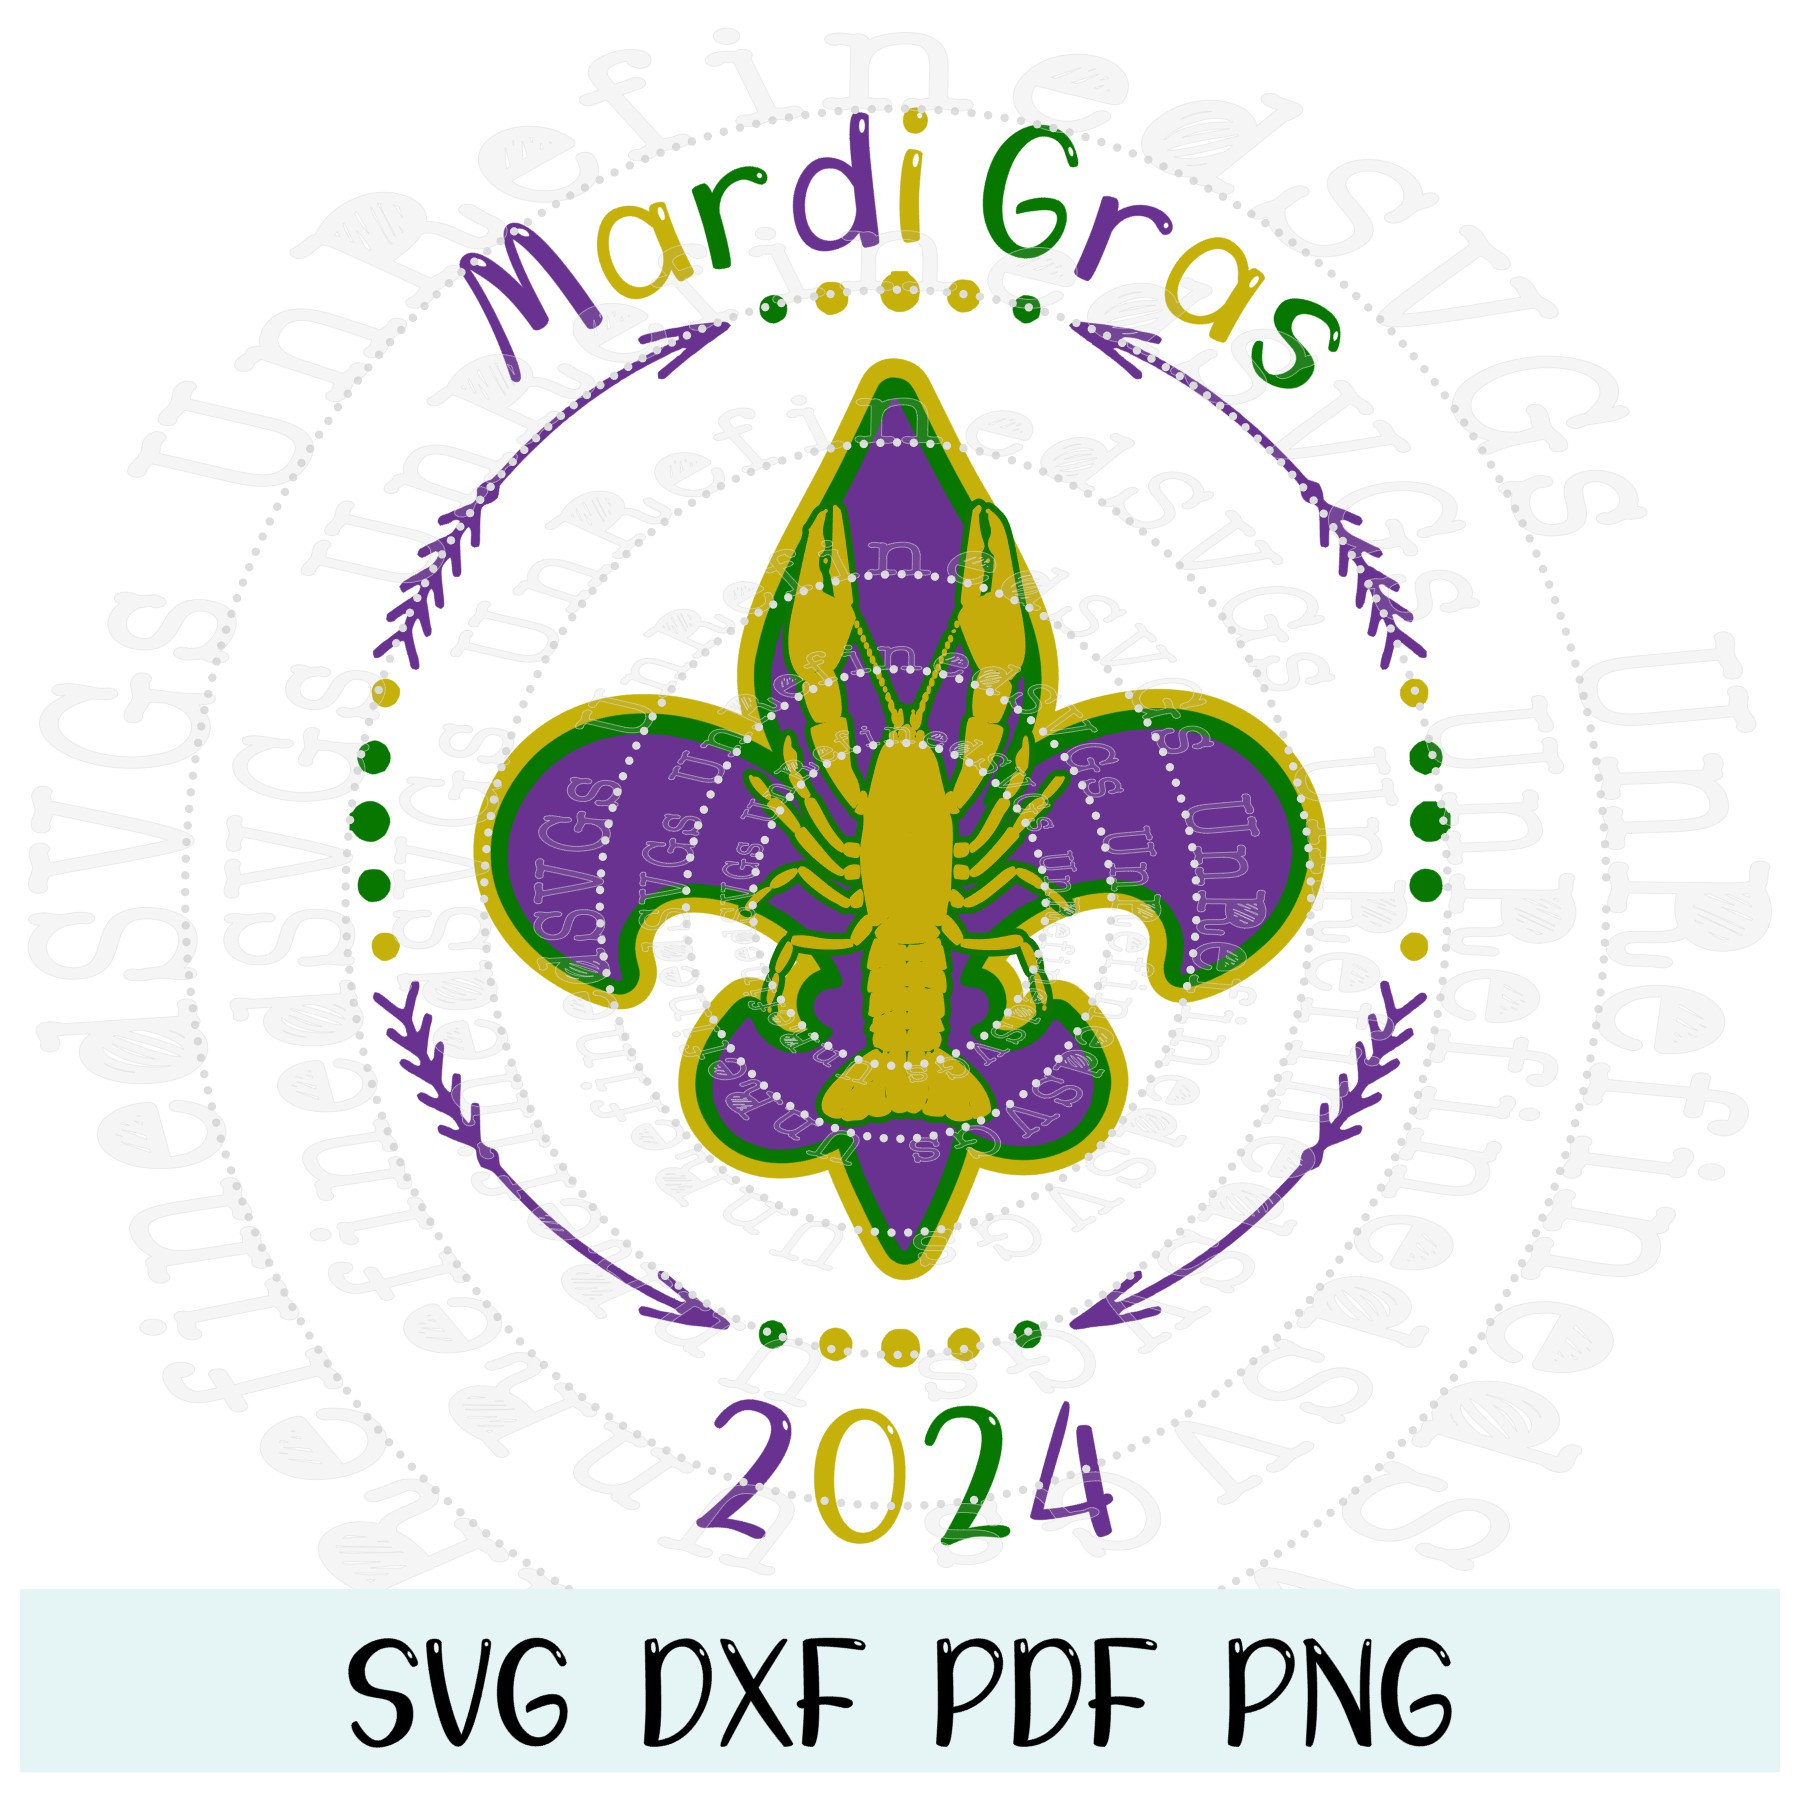 Mardi Gras SVG, Lips Fleur De Lis svg dxf png - Mardi Gras Fat Tuesday